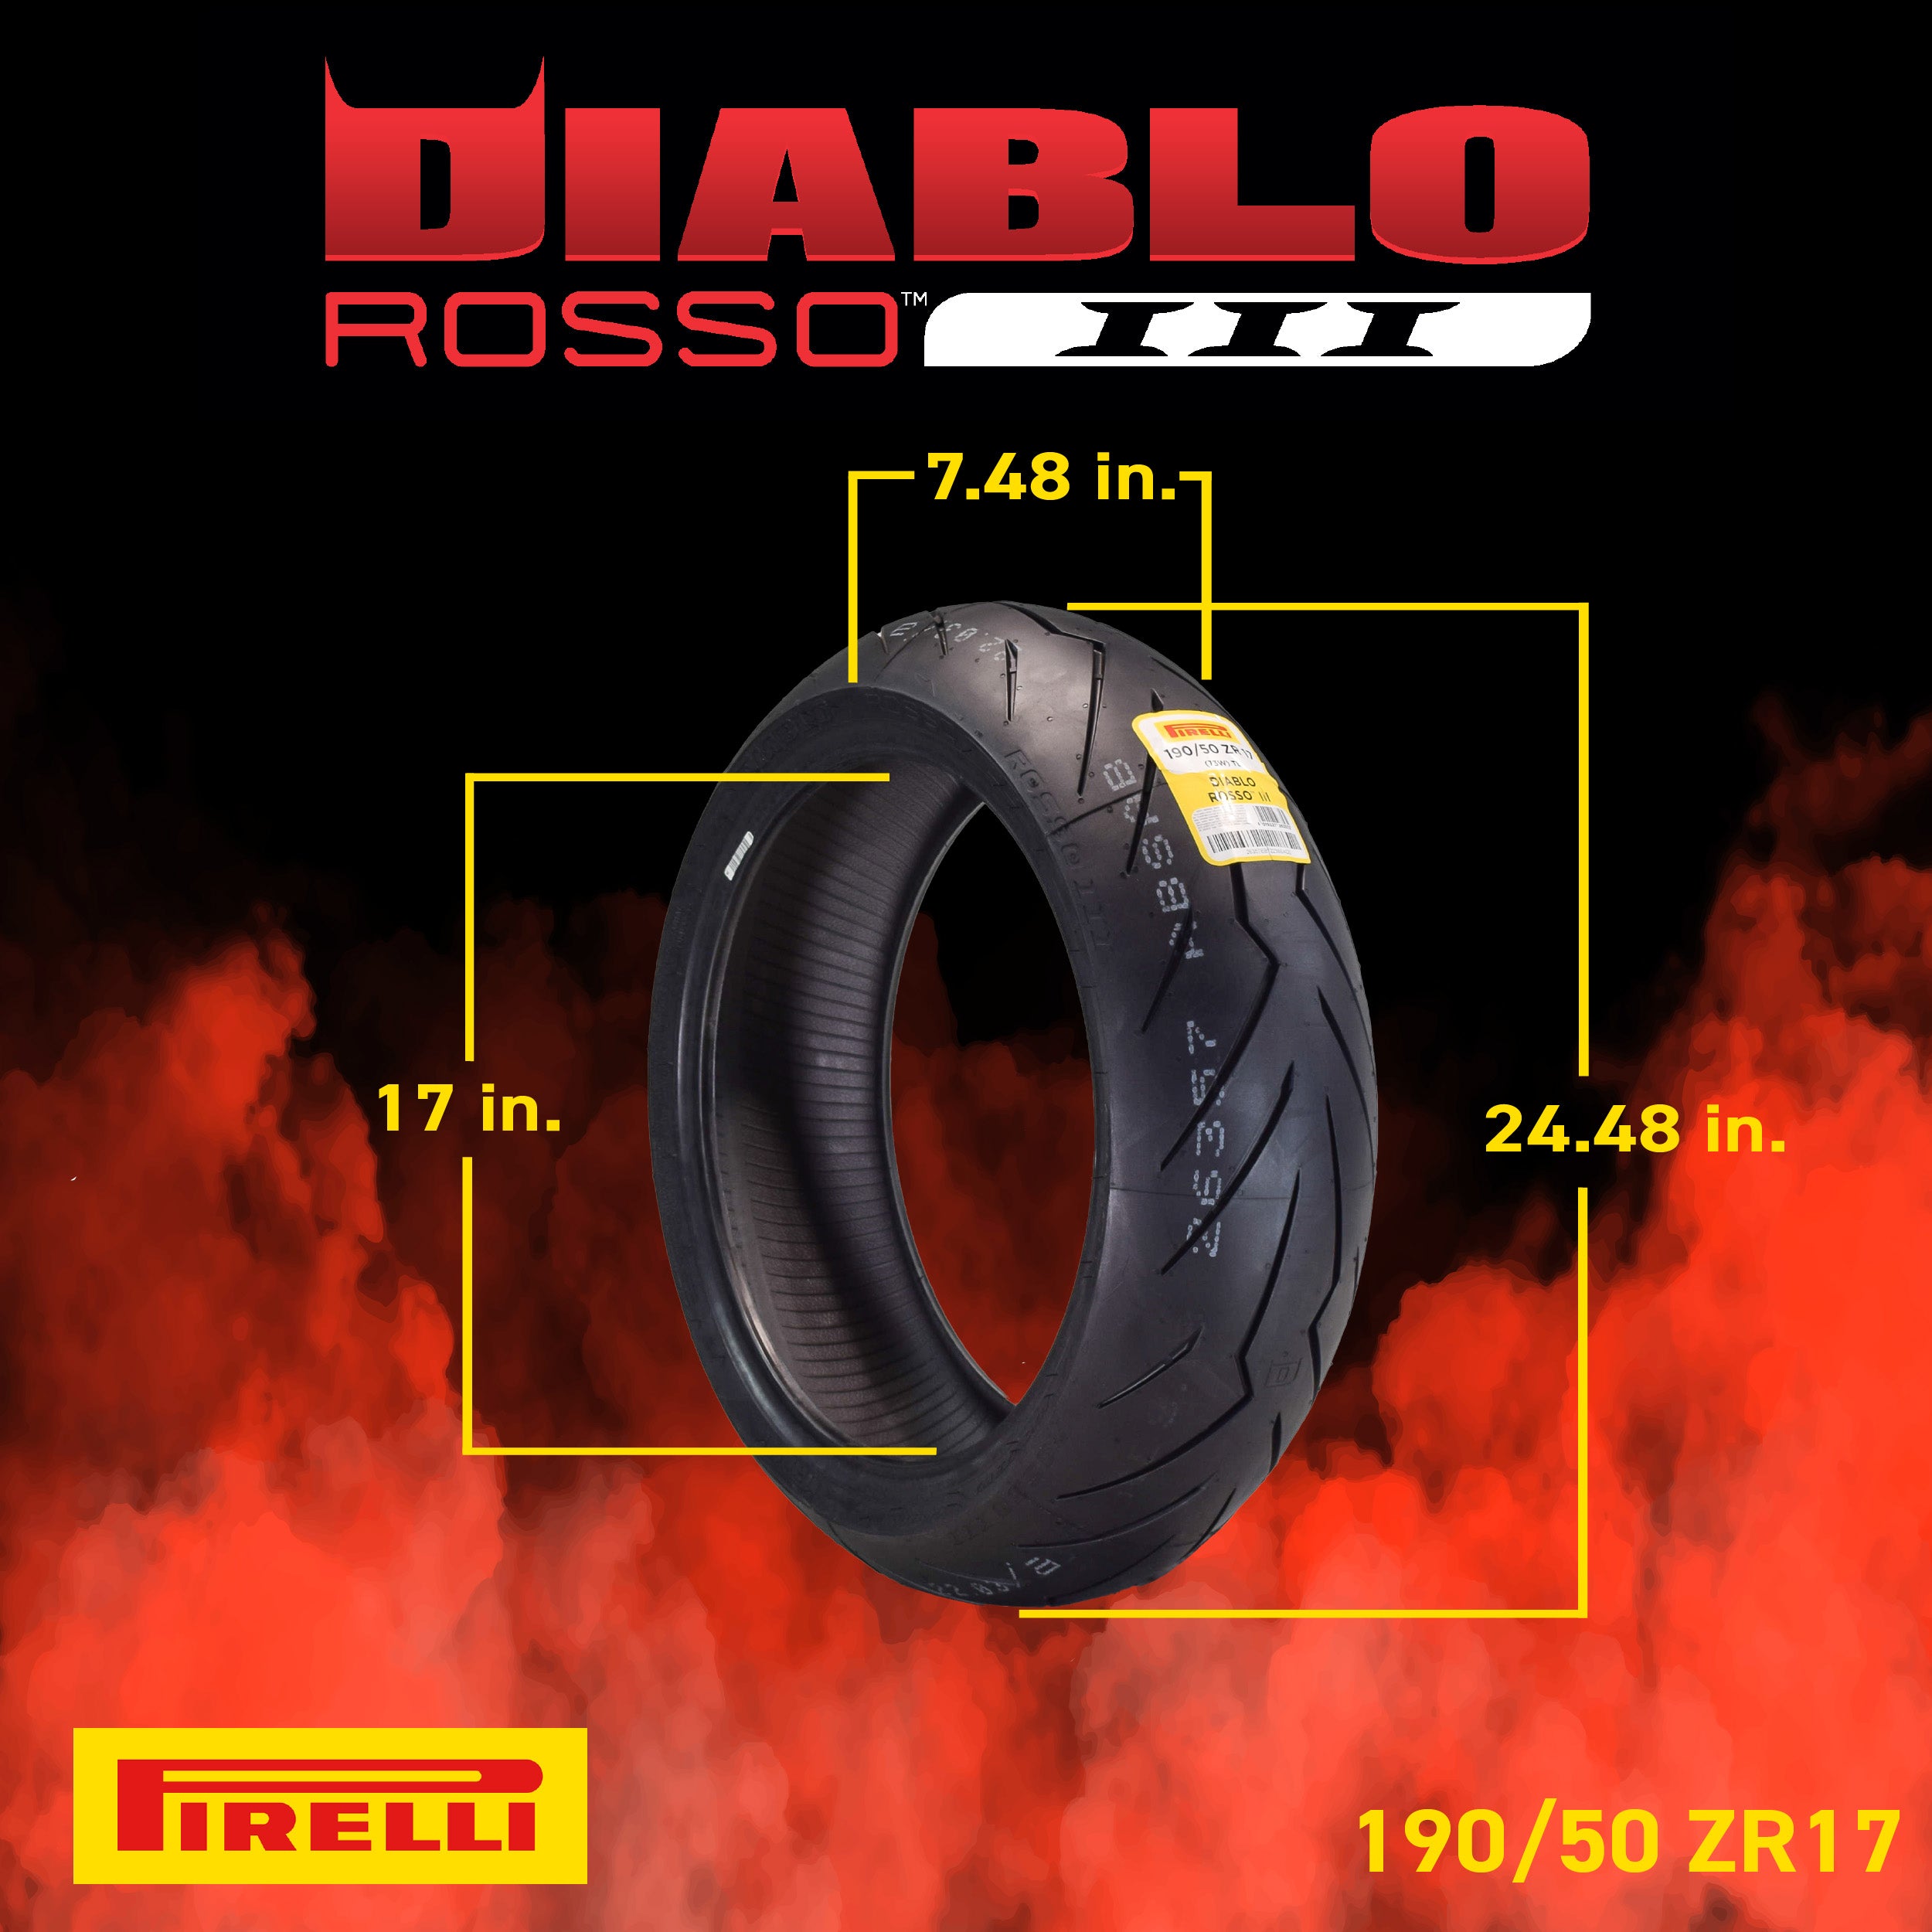 Pirelli Diablo Rosso III 120/60ZR17 190/50ZR17 Front & Rear Motorcycle Tire Set